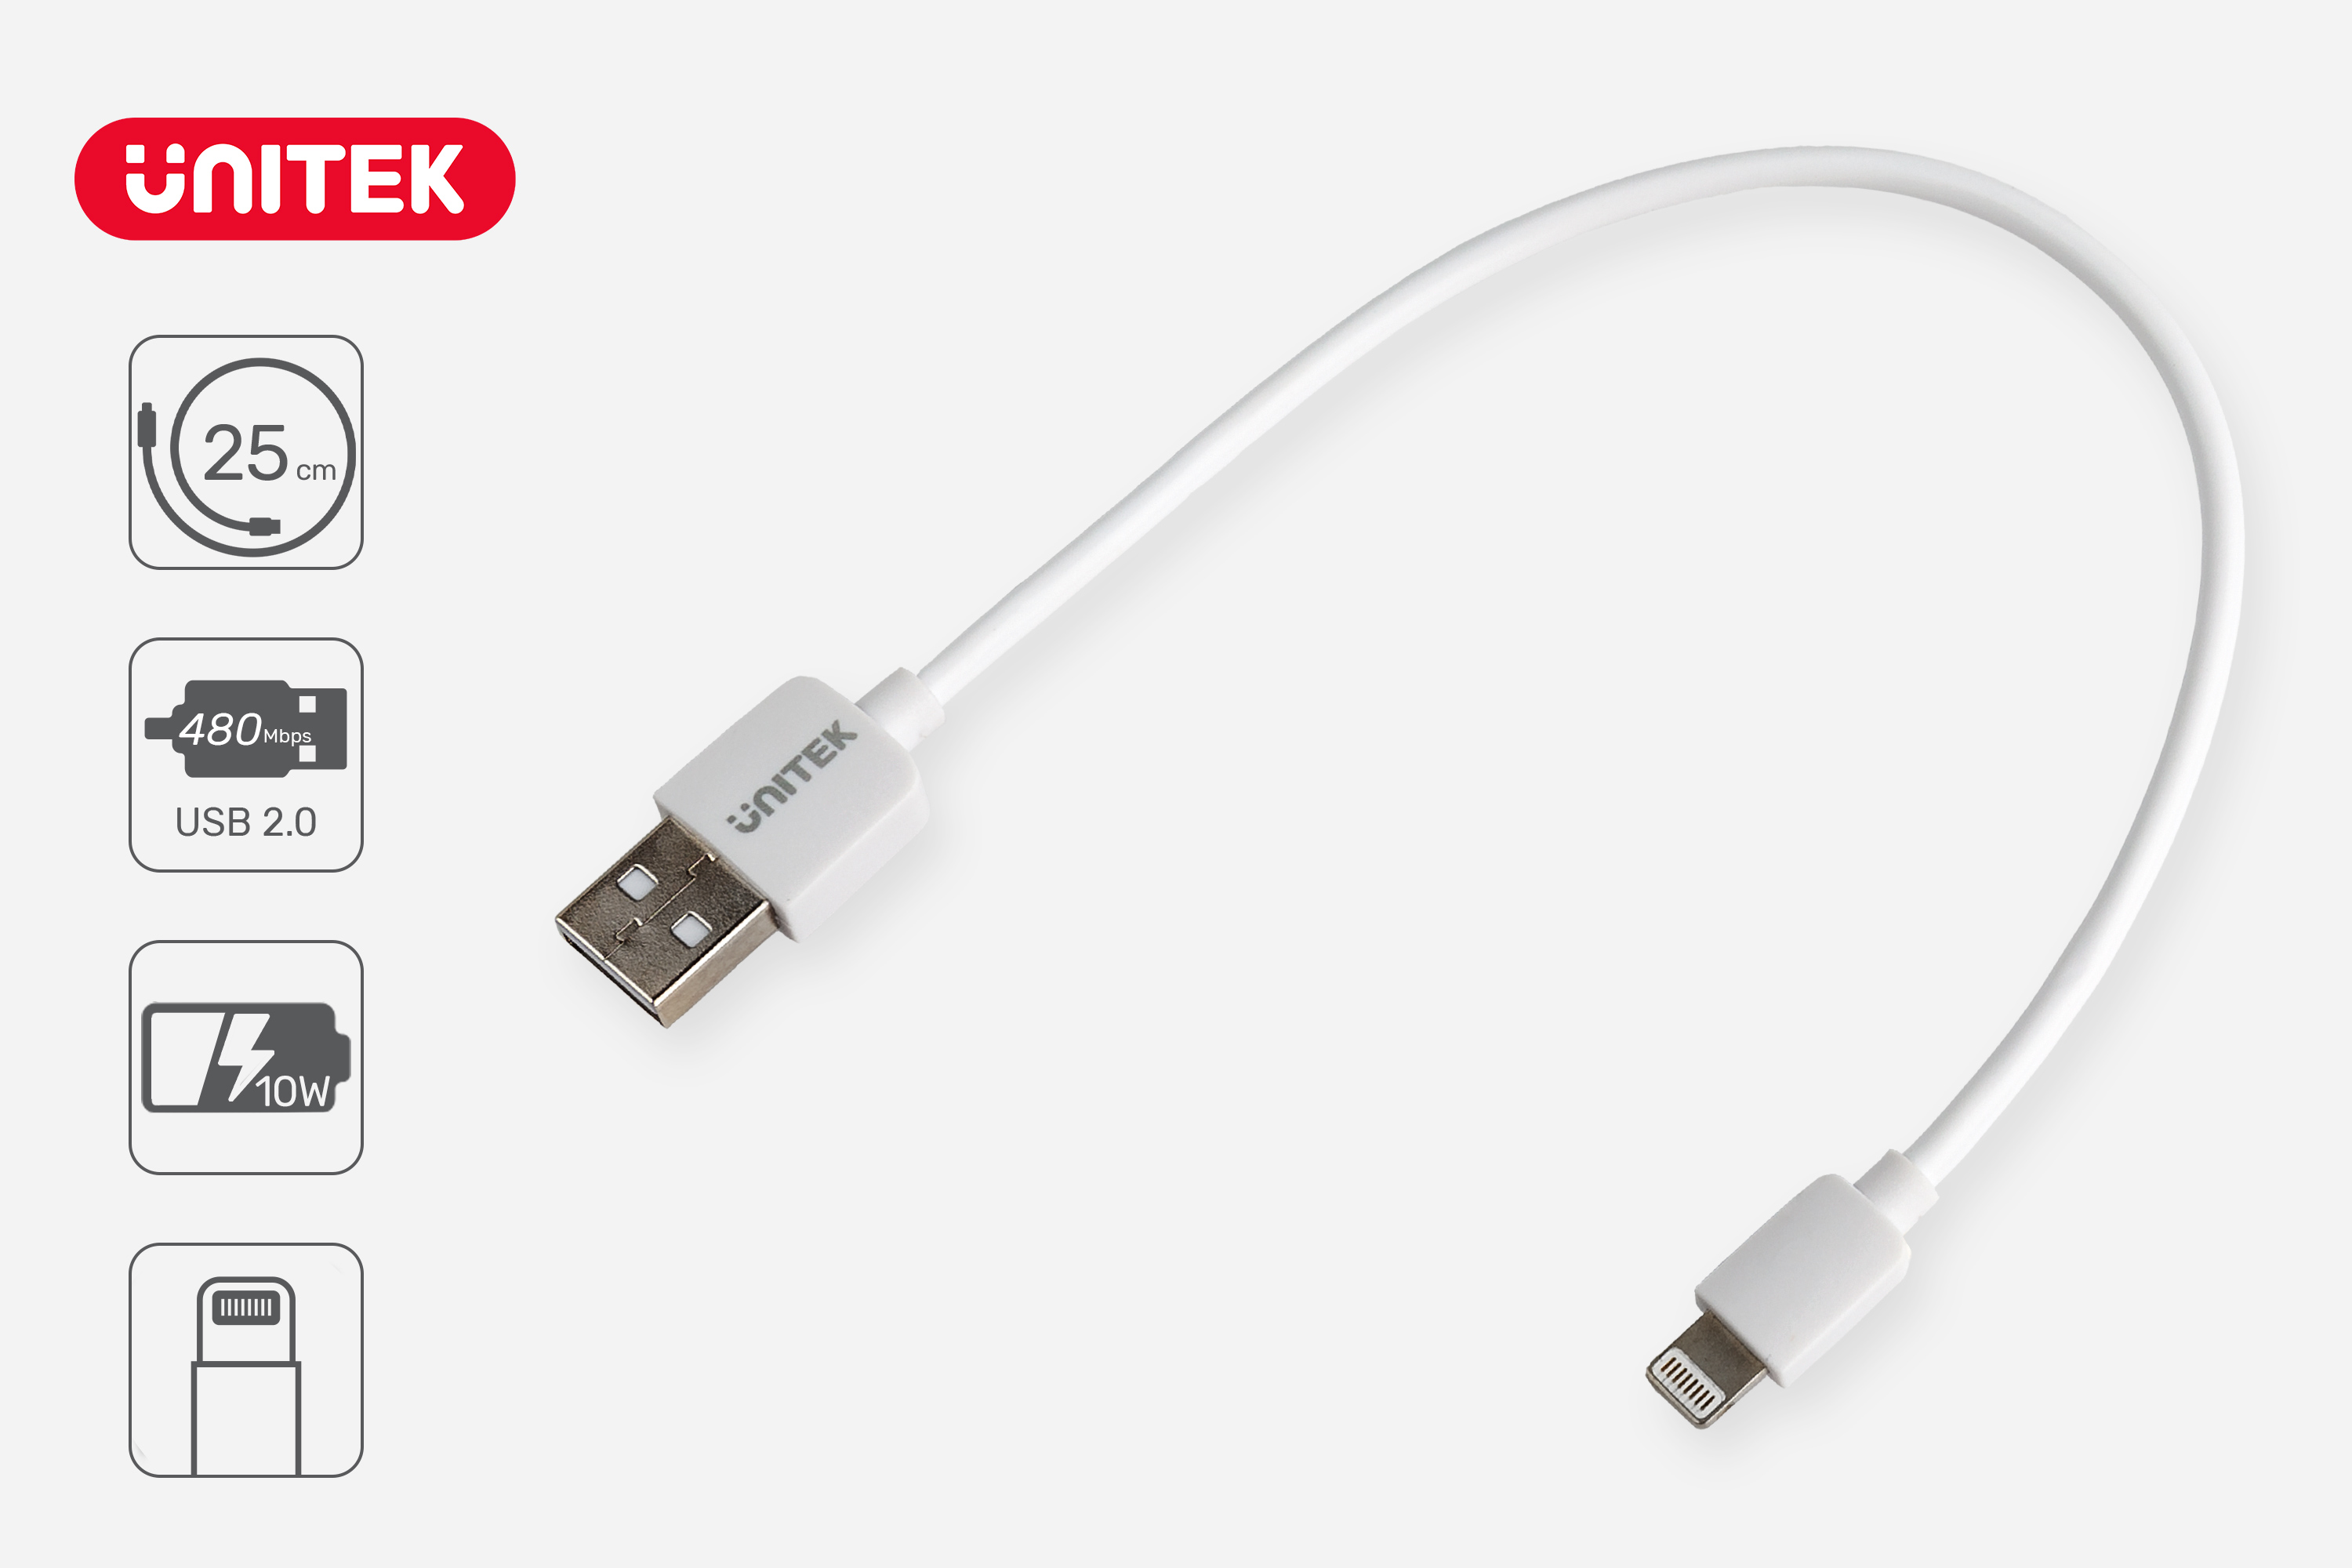 Przewód lightning USB 2.0 ładowanie 10 W do ładowania iPhone'a i iPada